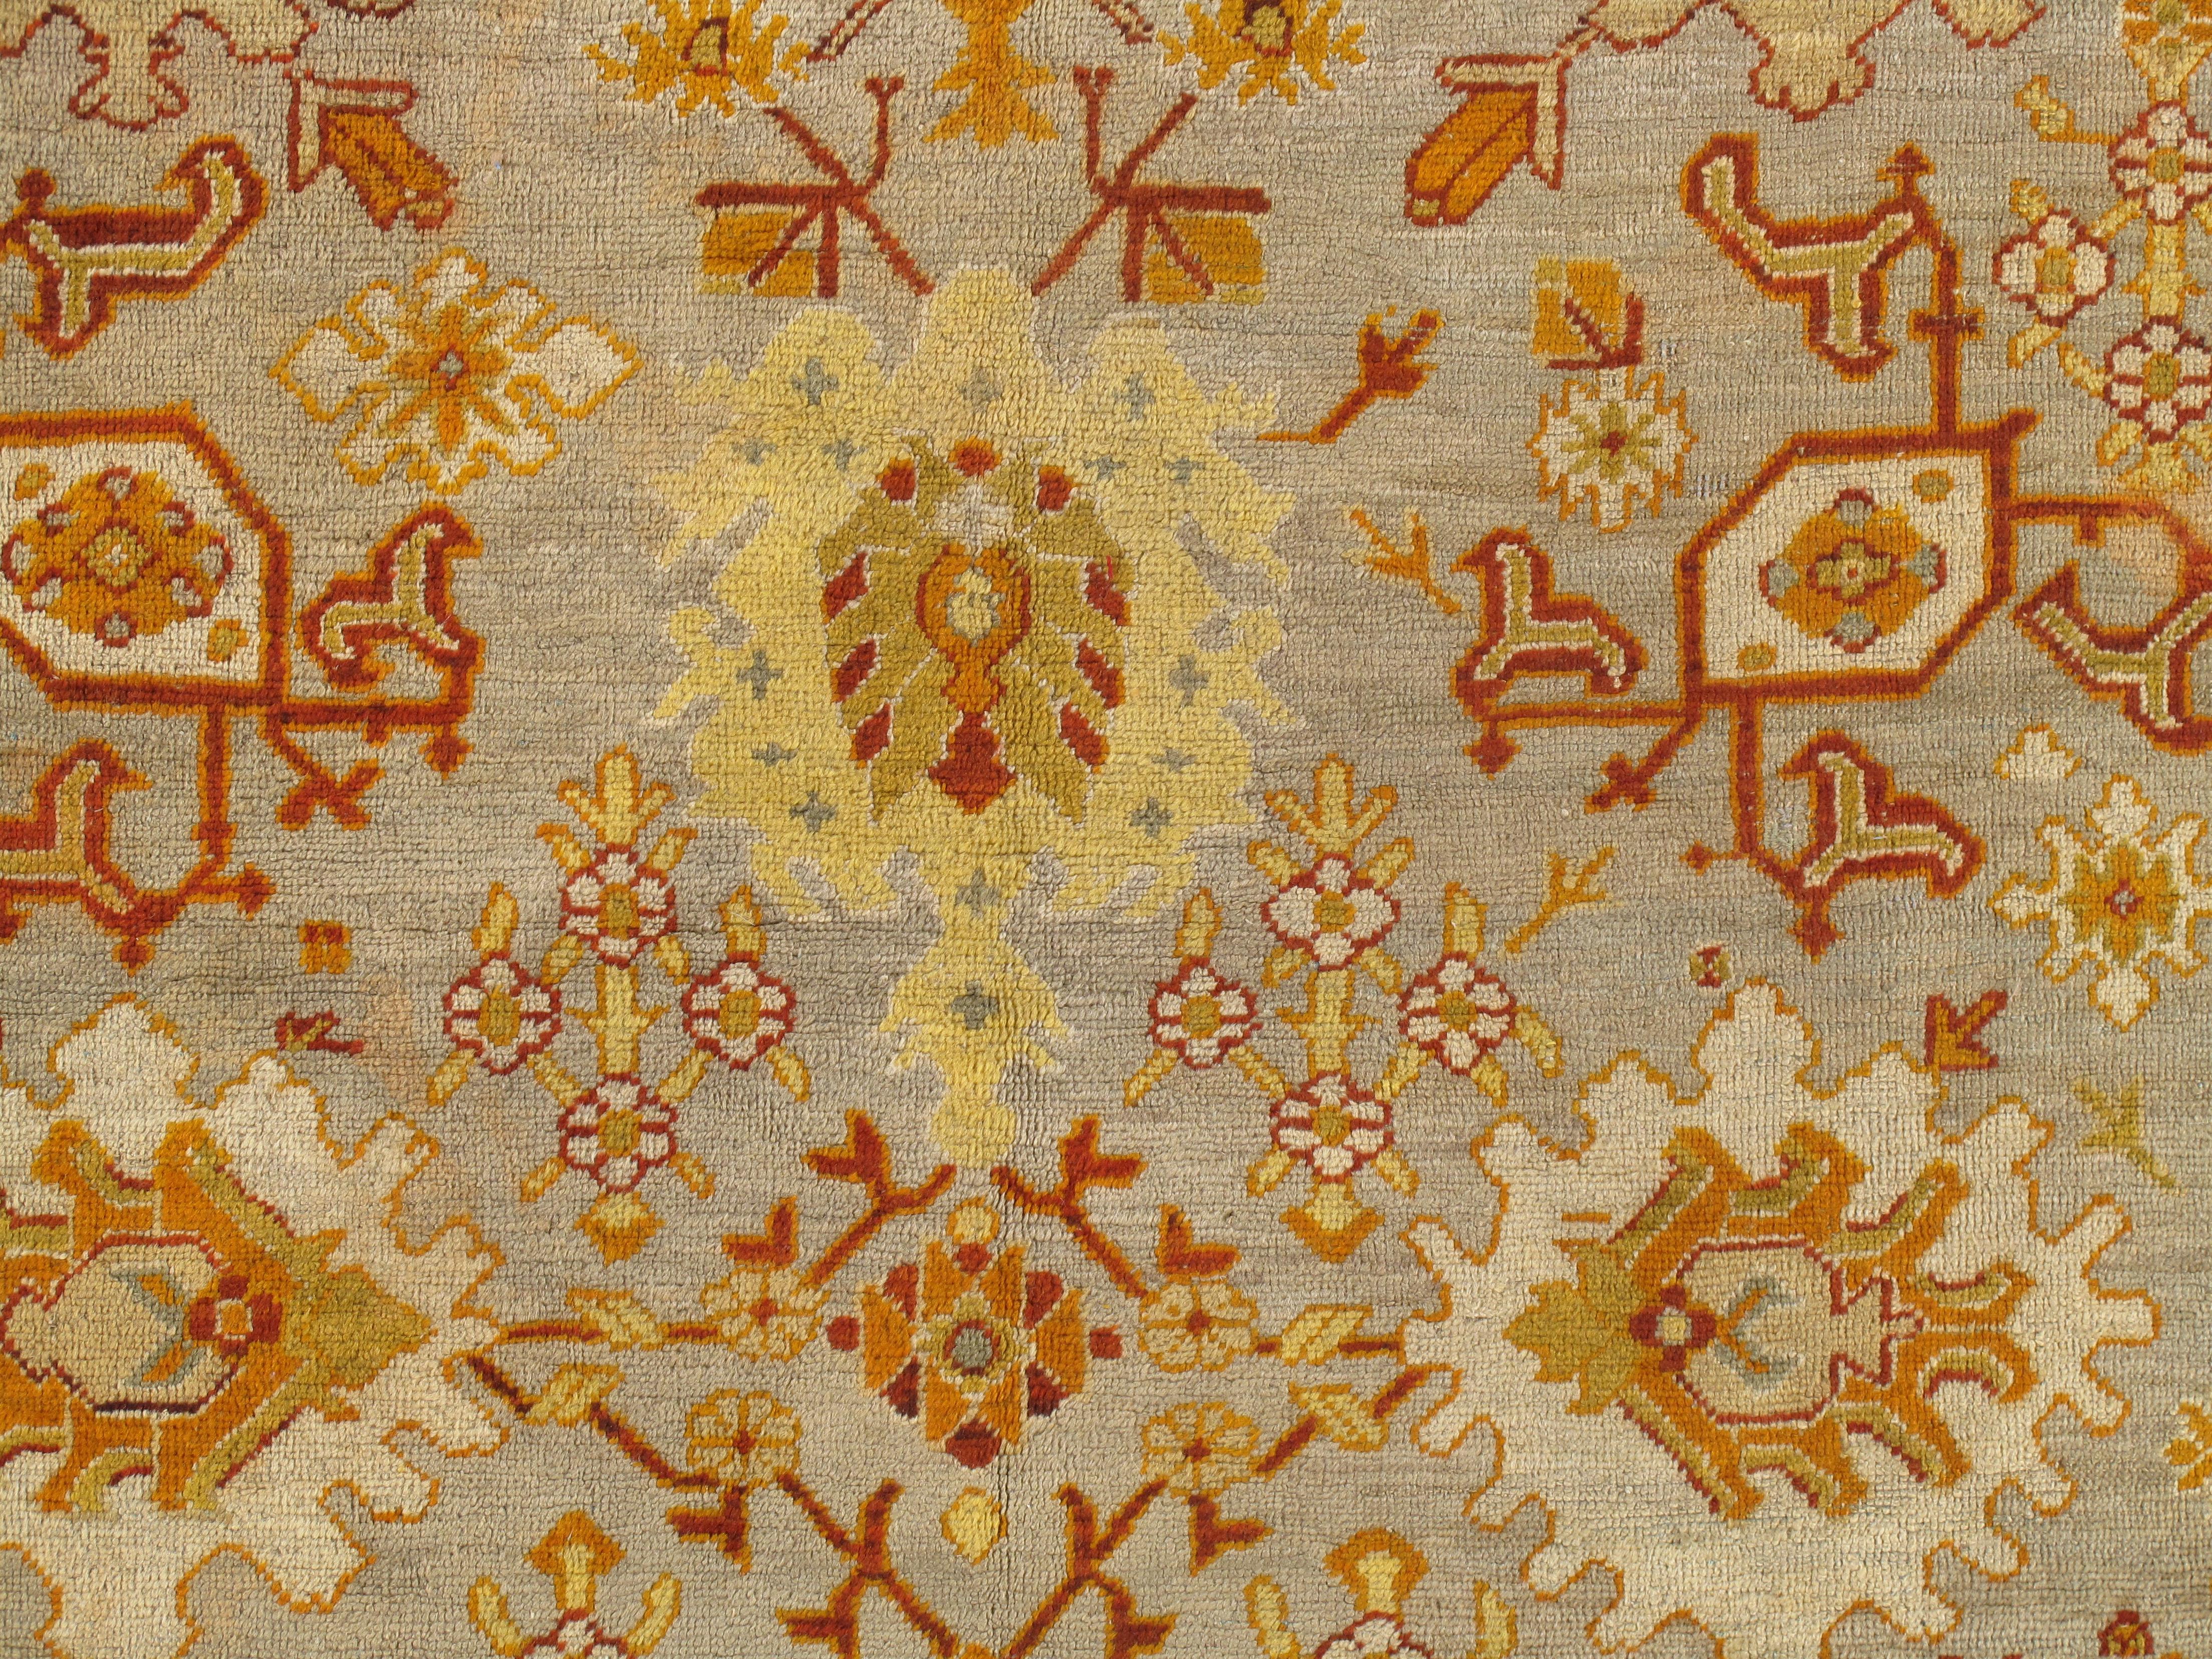 Oushak-Teppiche, die auch als Ushak-Teppiche bekannt sind, werden in der Westtürkei gewebt und haben ausgeprägte Muster, wie z. B. eckige, großflächige Blumenmuster. Sie verbreiten in der Regel Ruhe und Frieden in einem Raum. Bis heute werden die